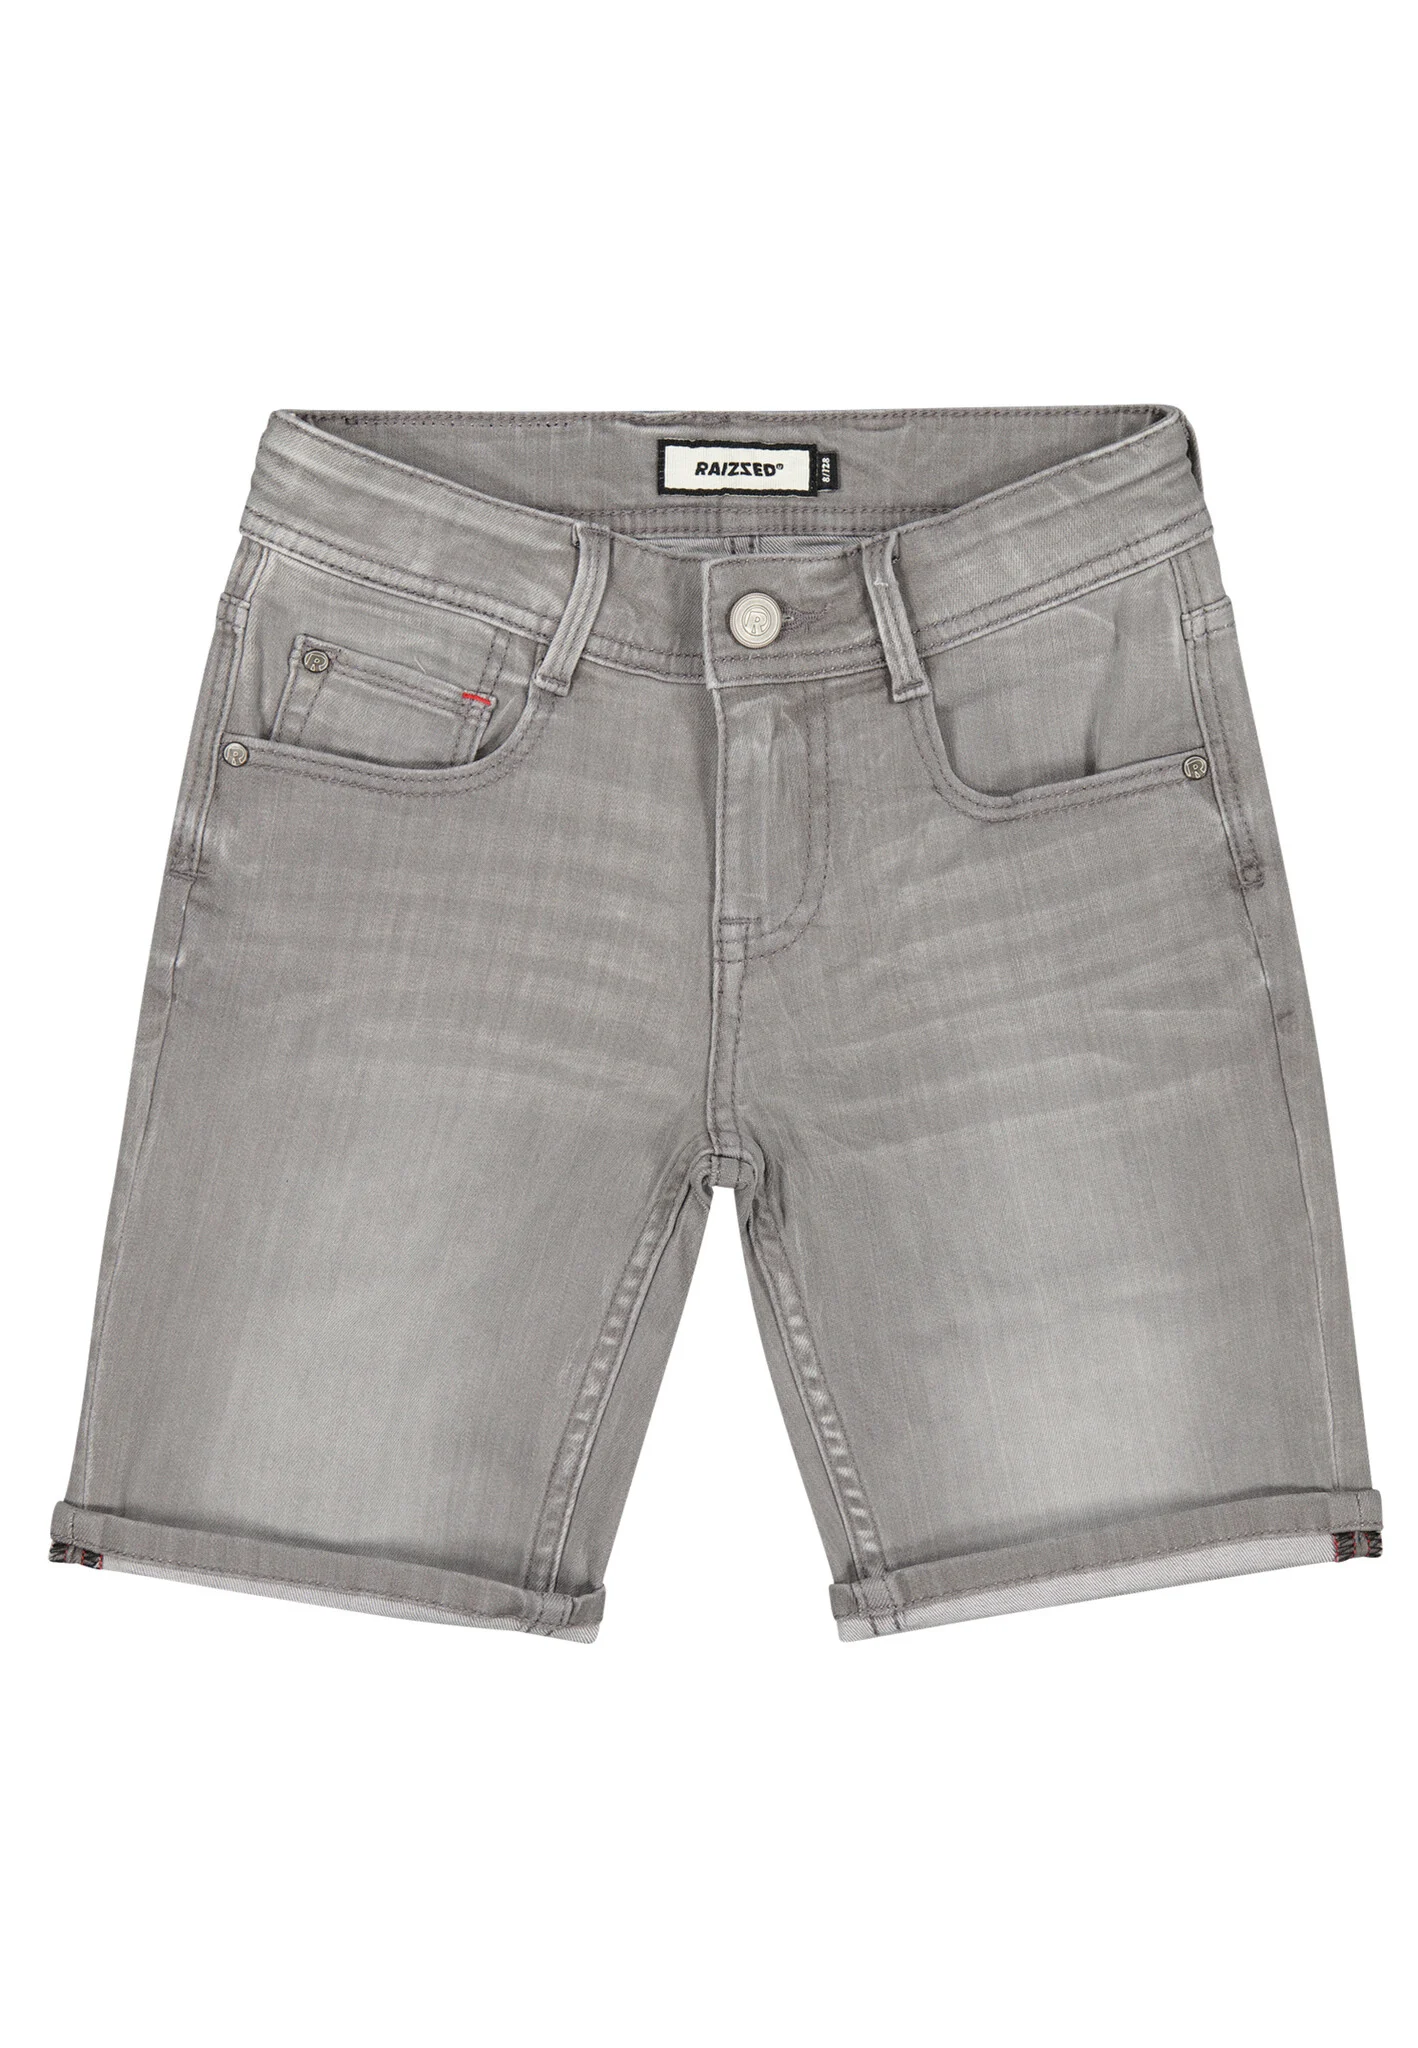 Raizzed Jongens korte jeans oregon mid grey stone